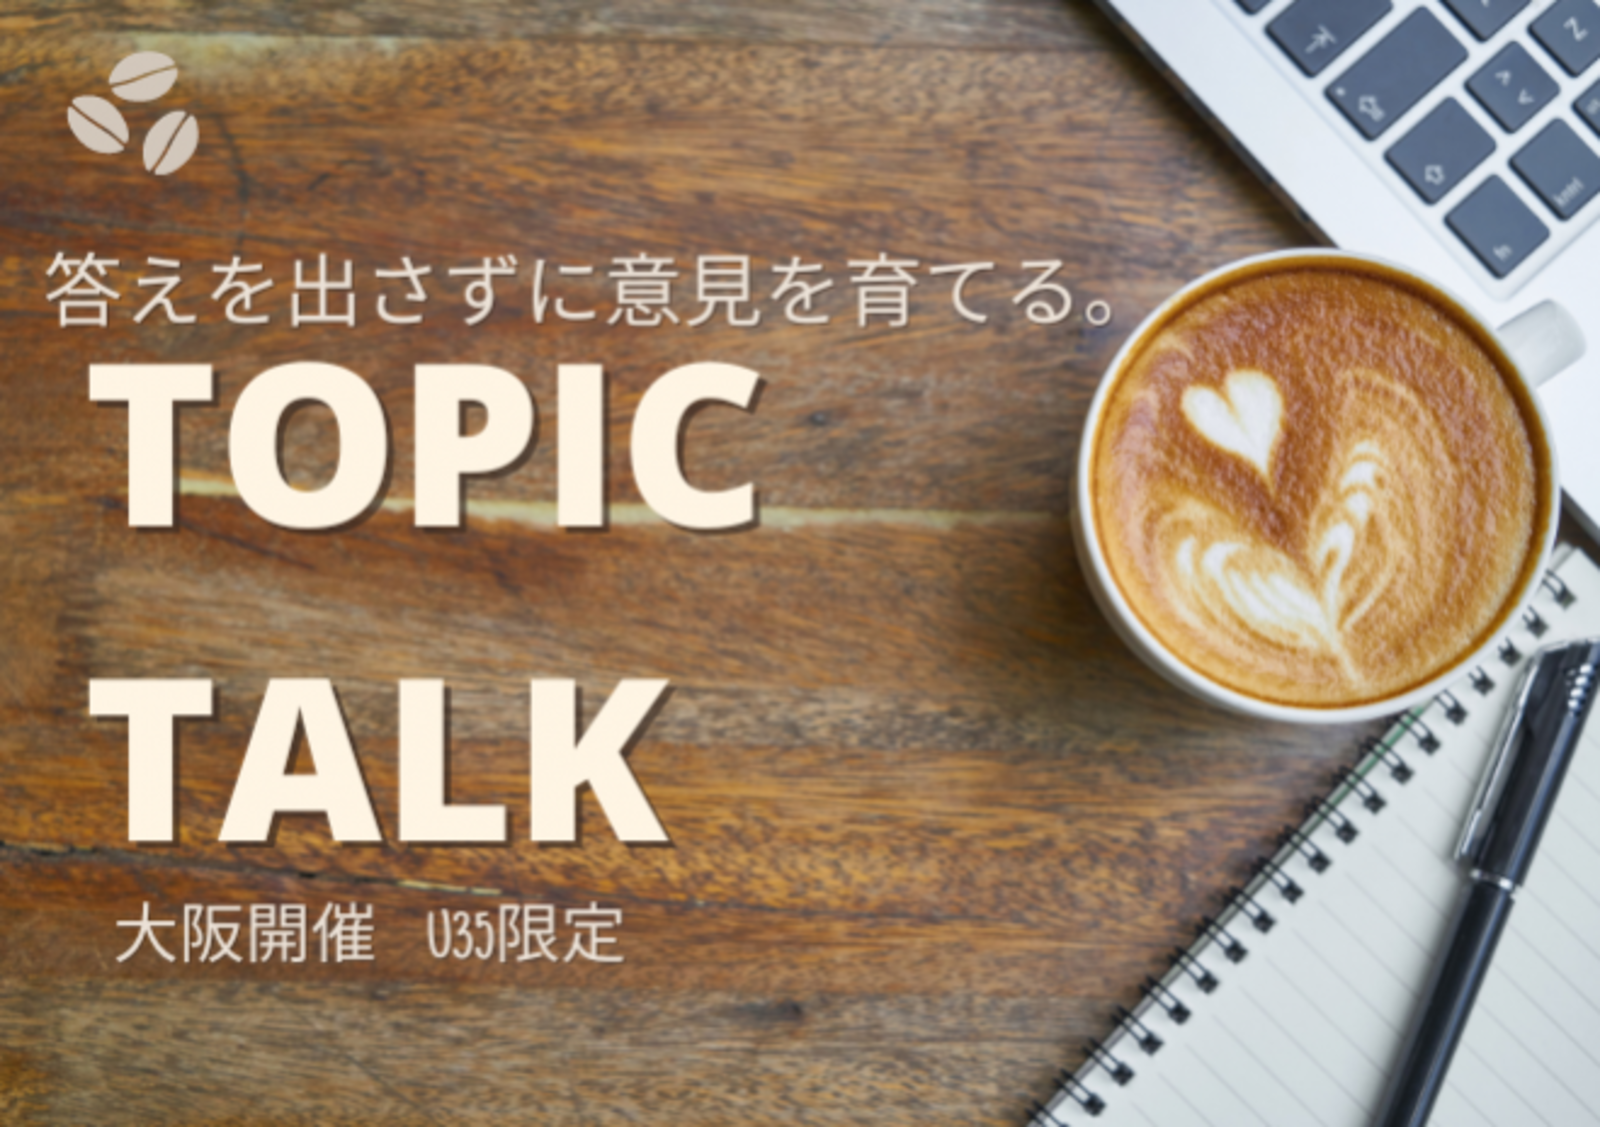 平均12人参加！【20-35歳限定大阪】TOPIC TALKそれぞれの経験と考えをシェアして、あたらしい視点を得よう!対話イベント♩